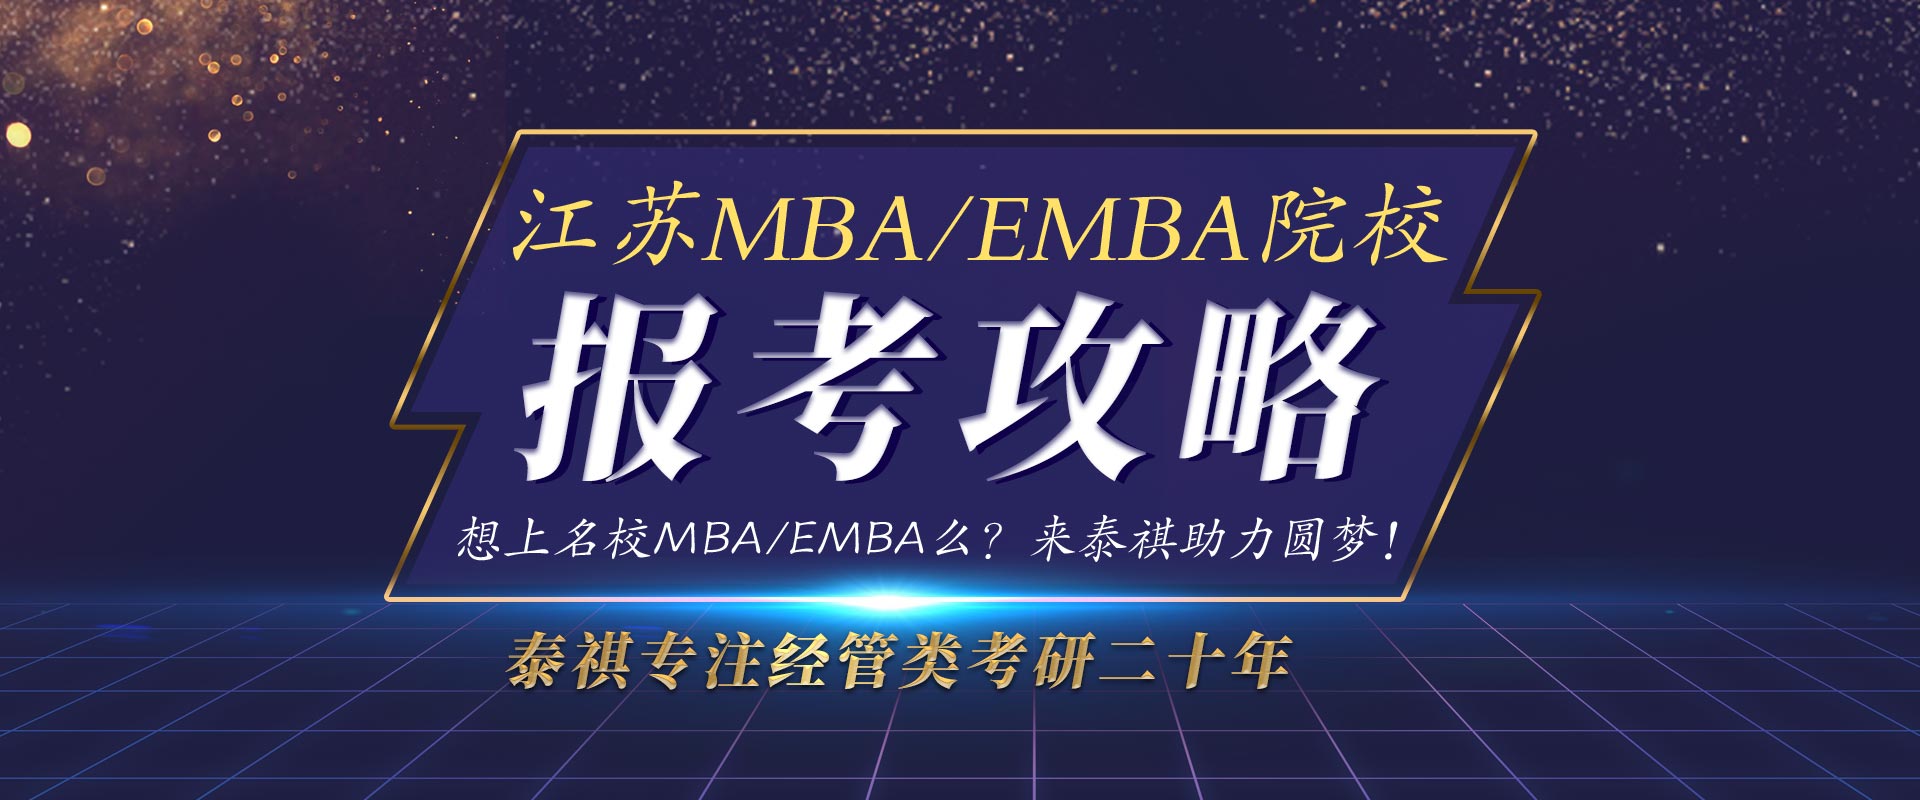 江苏名校MBA/EMBA报考攻略